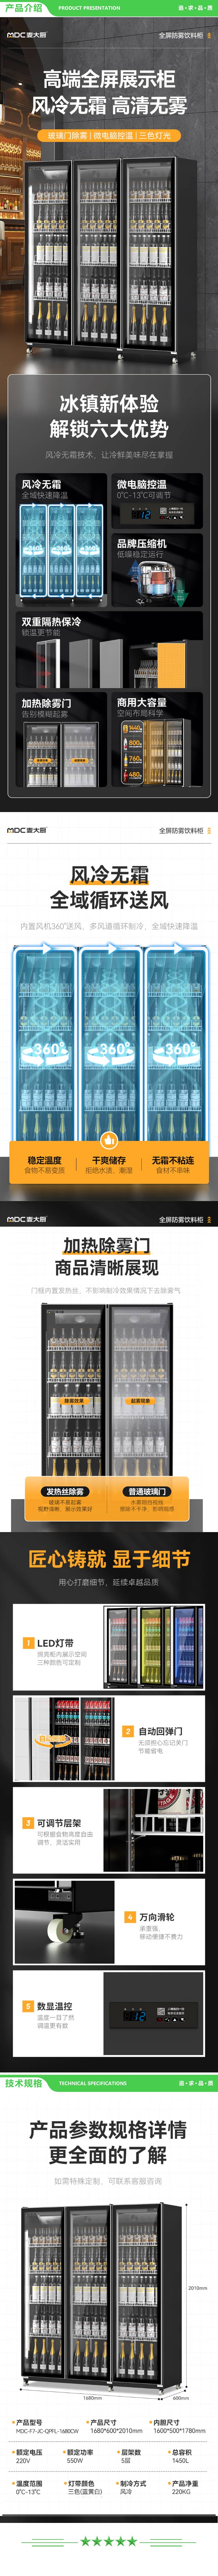 麦大厨 MDC-F7-JC-QPFL-1680CW 饮料柜展示柜冷藏柜立式商用冰柜酒水饮料便利店超市风冷三门保鲜柜 2.jpg